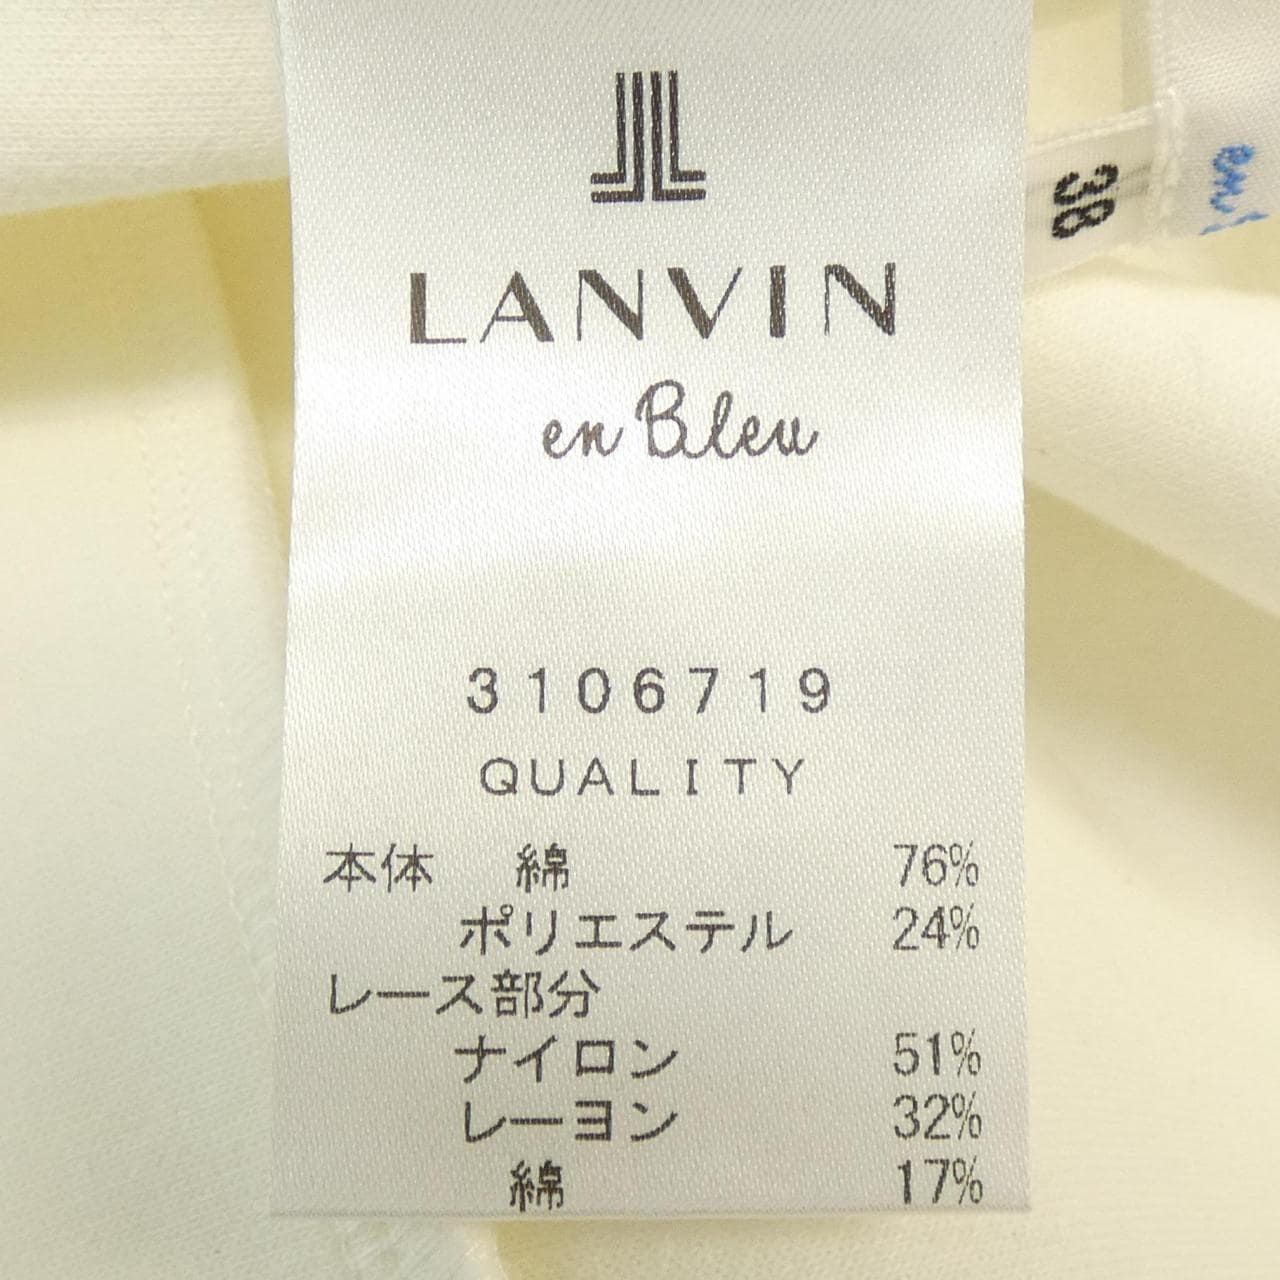 LANVIN On 藍色 LANVIN en Bleu 衛衣